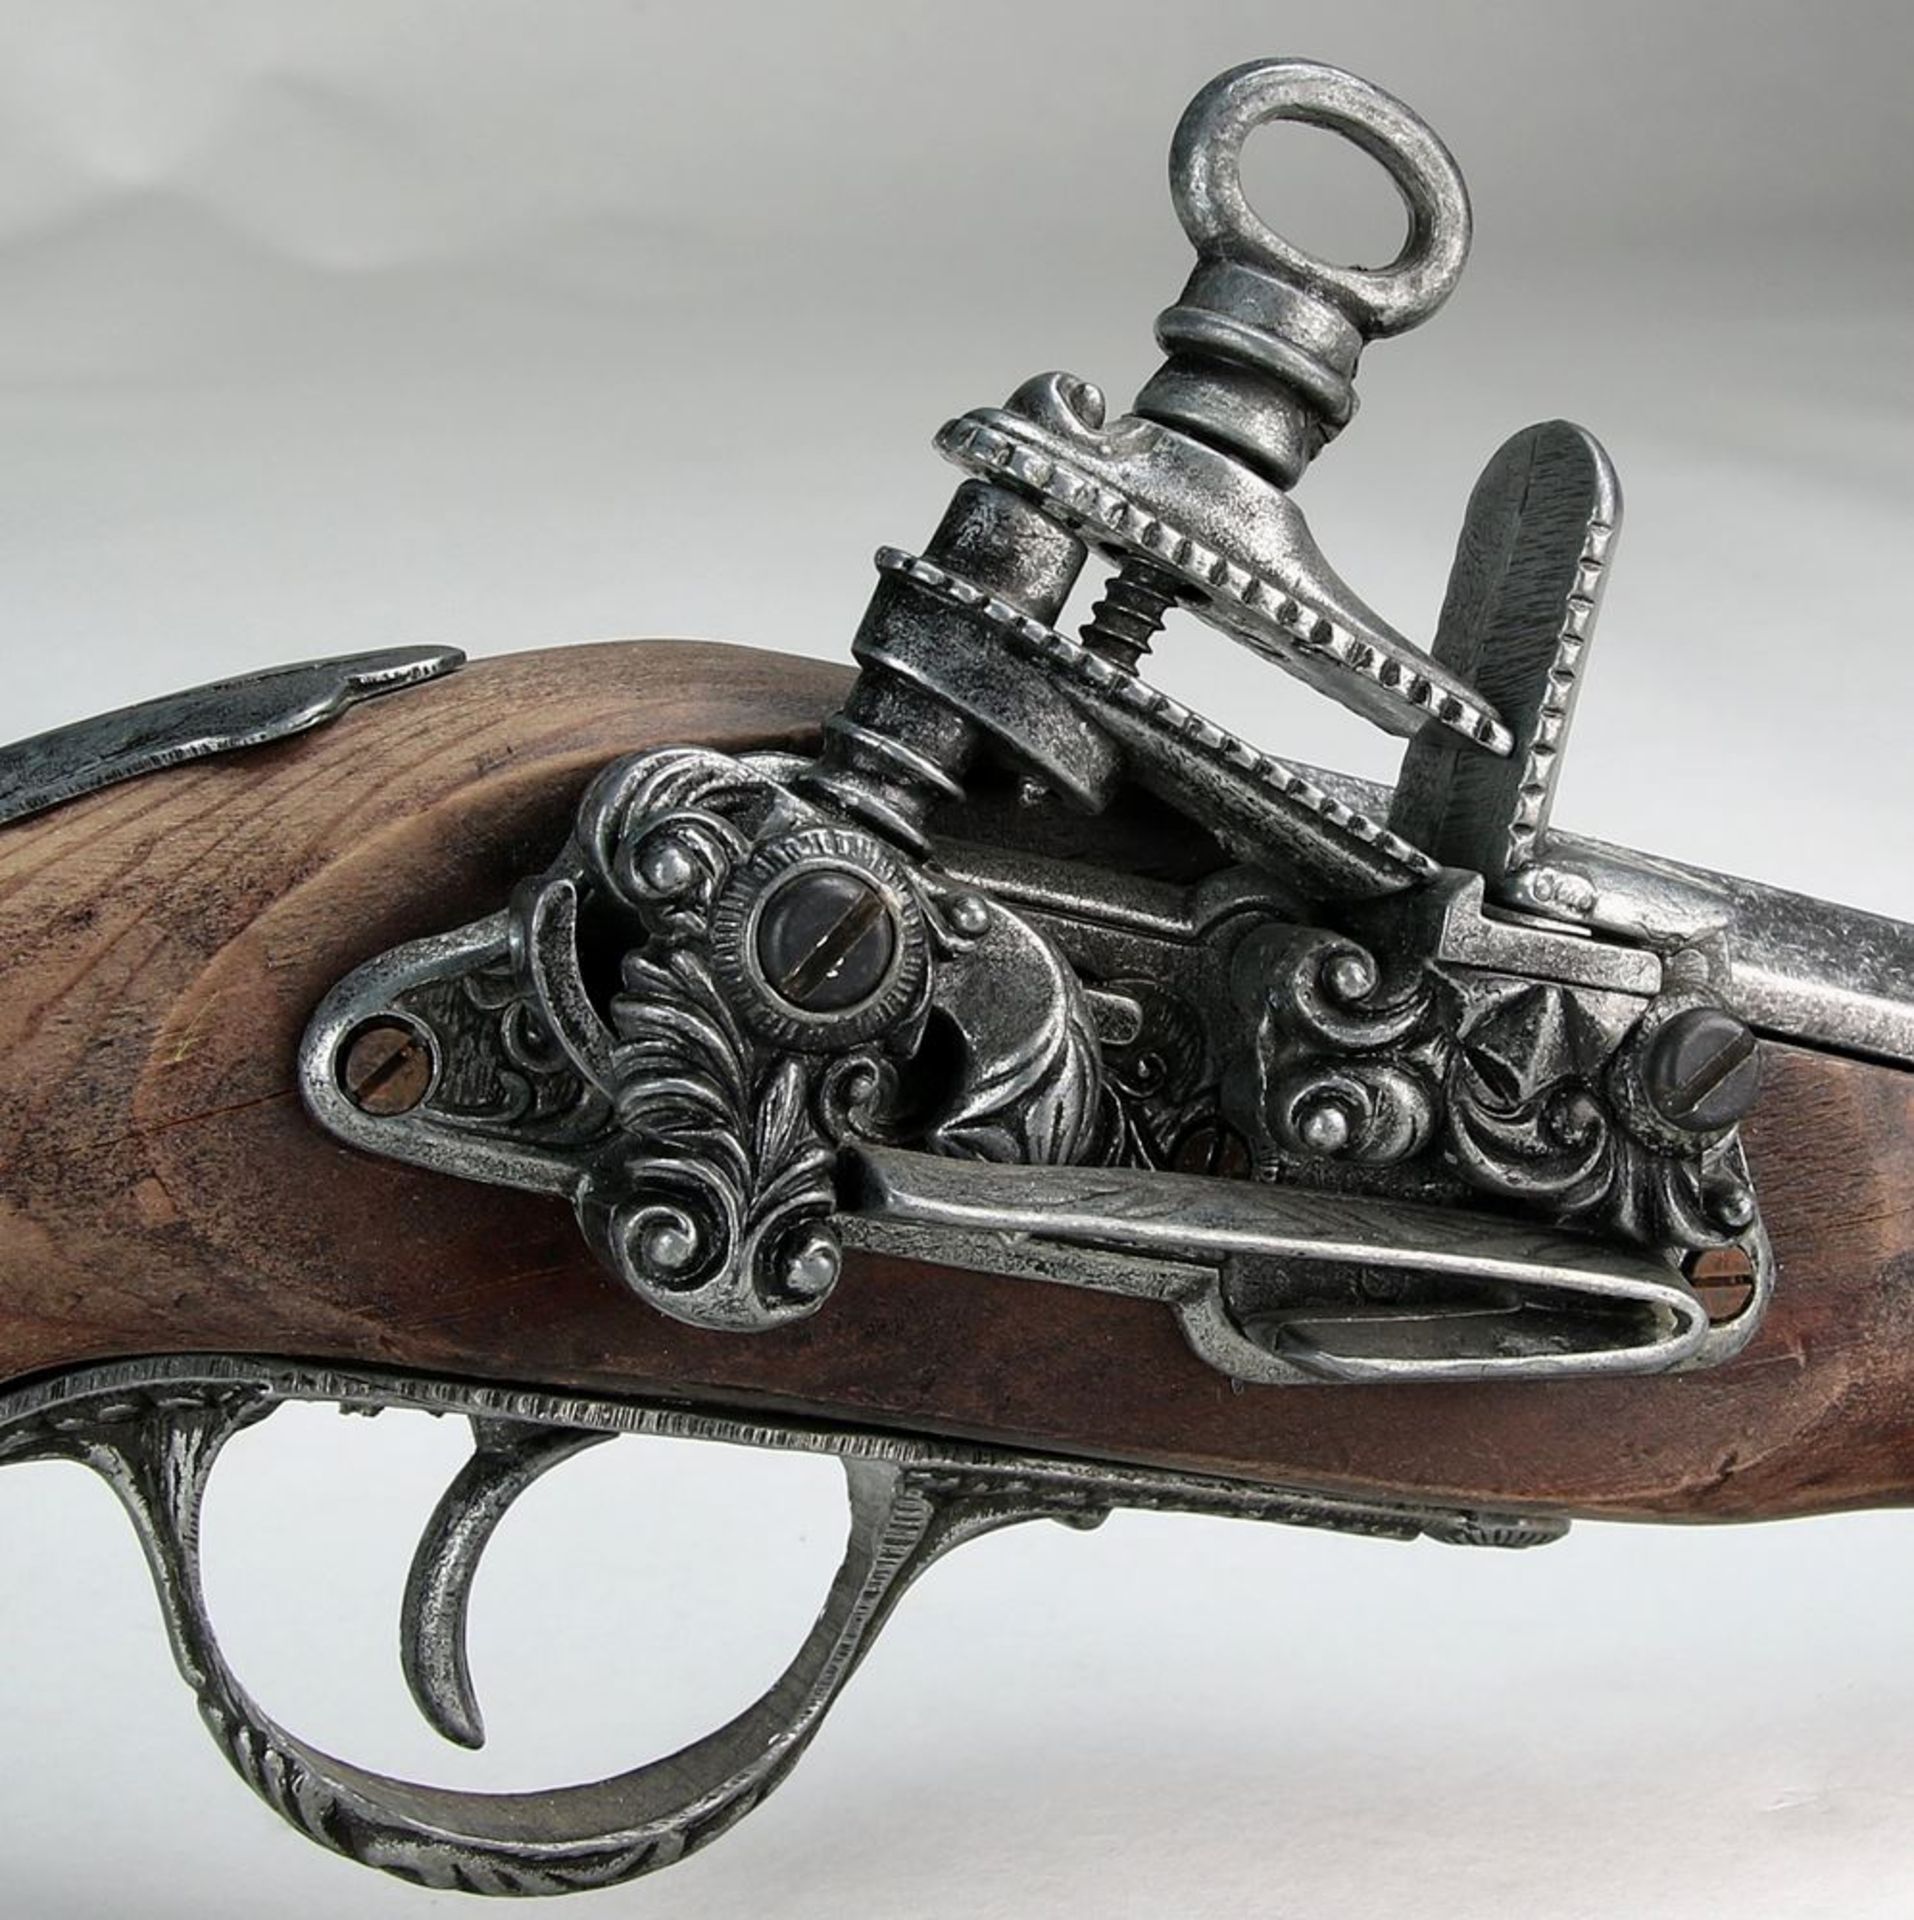 Steinschloßpistolein der Art einer barocken Waffe. Länge ca. 32 cm, Gewicht ca. 6,8 Kilogramm. - Bild 3 aus 5